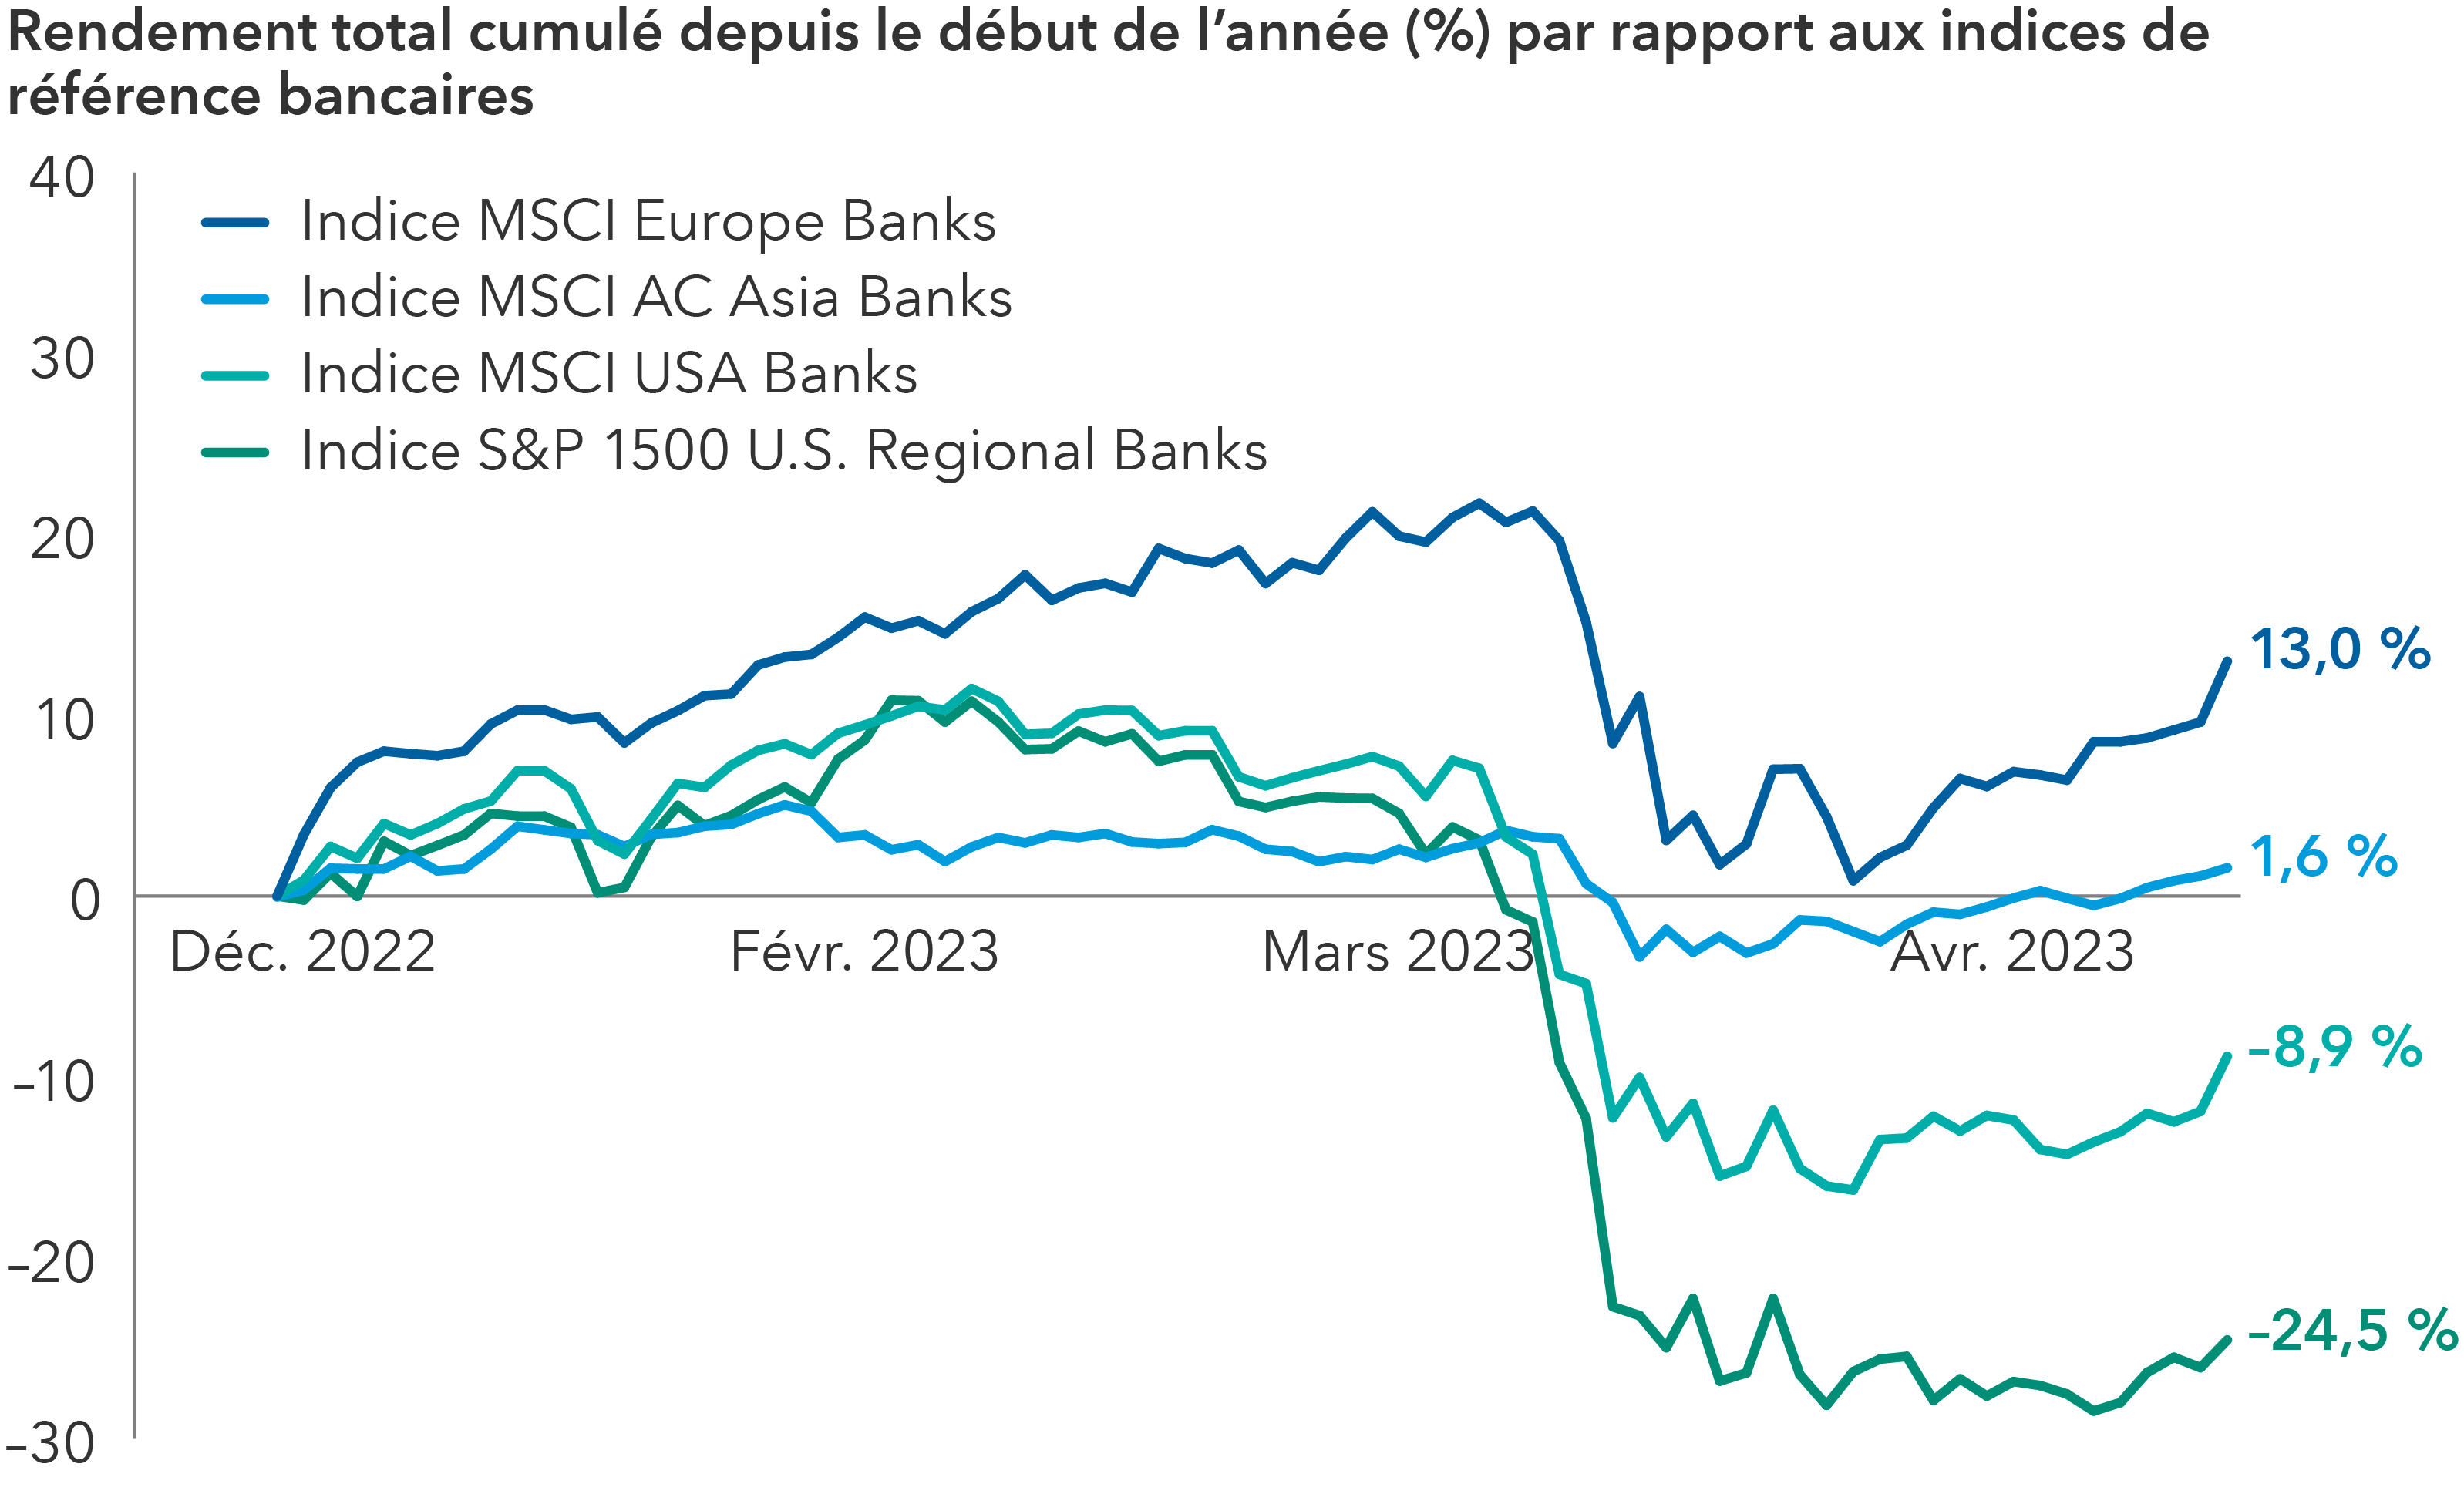 Le graphique fait état des rendements cumulés depuis le début de l’année 2023 pour les principaux indices bancaires mondiaux. L’indice MSCI Europe Banks a progressé de 13 %. L’indice MSCI AC Asia Banks a progressé de 1,6 %. L’indice MSCI USA Banks a baissé de 8,9 %. L’indice S&P 1500 U.S. Regional Banks a baissé de 24,5 %.